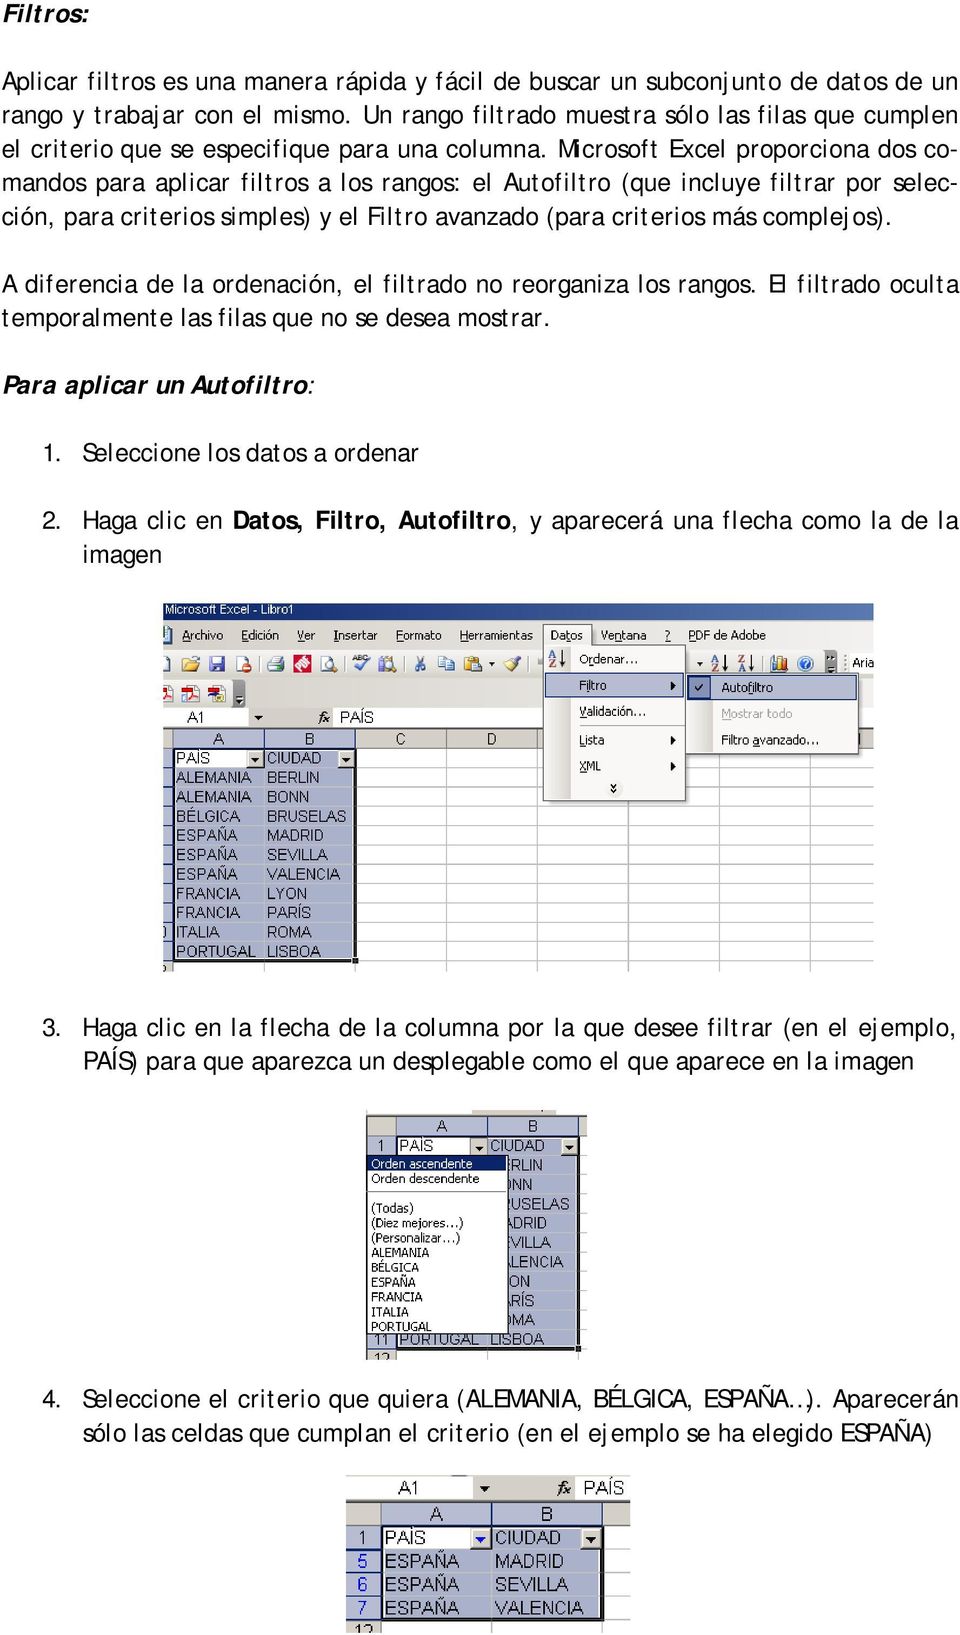 Microsoft Excel proporciona dos comandos para aplicar filtros a los rangos: el Autofiltro (que incluye filtrar por selección, para crit erios simples) y el Fil t ro avanzado (para crit erios más